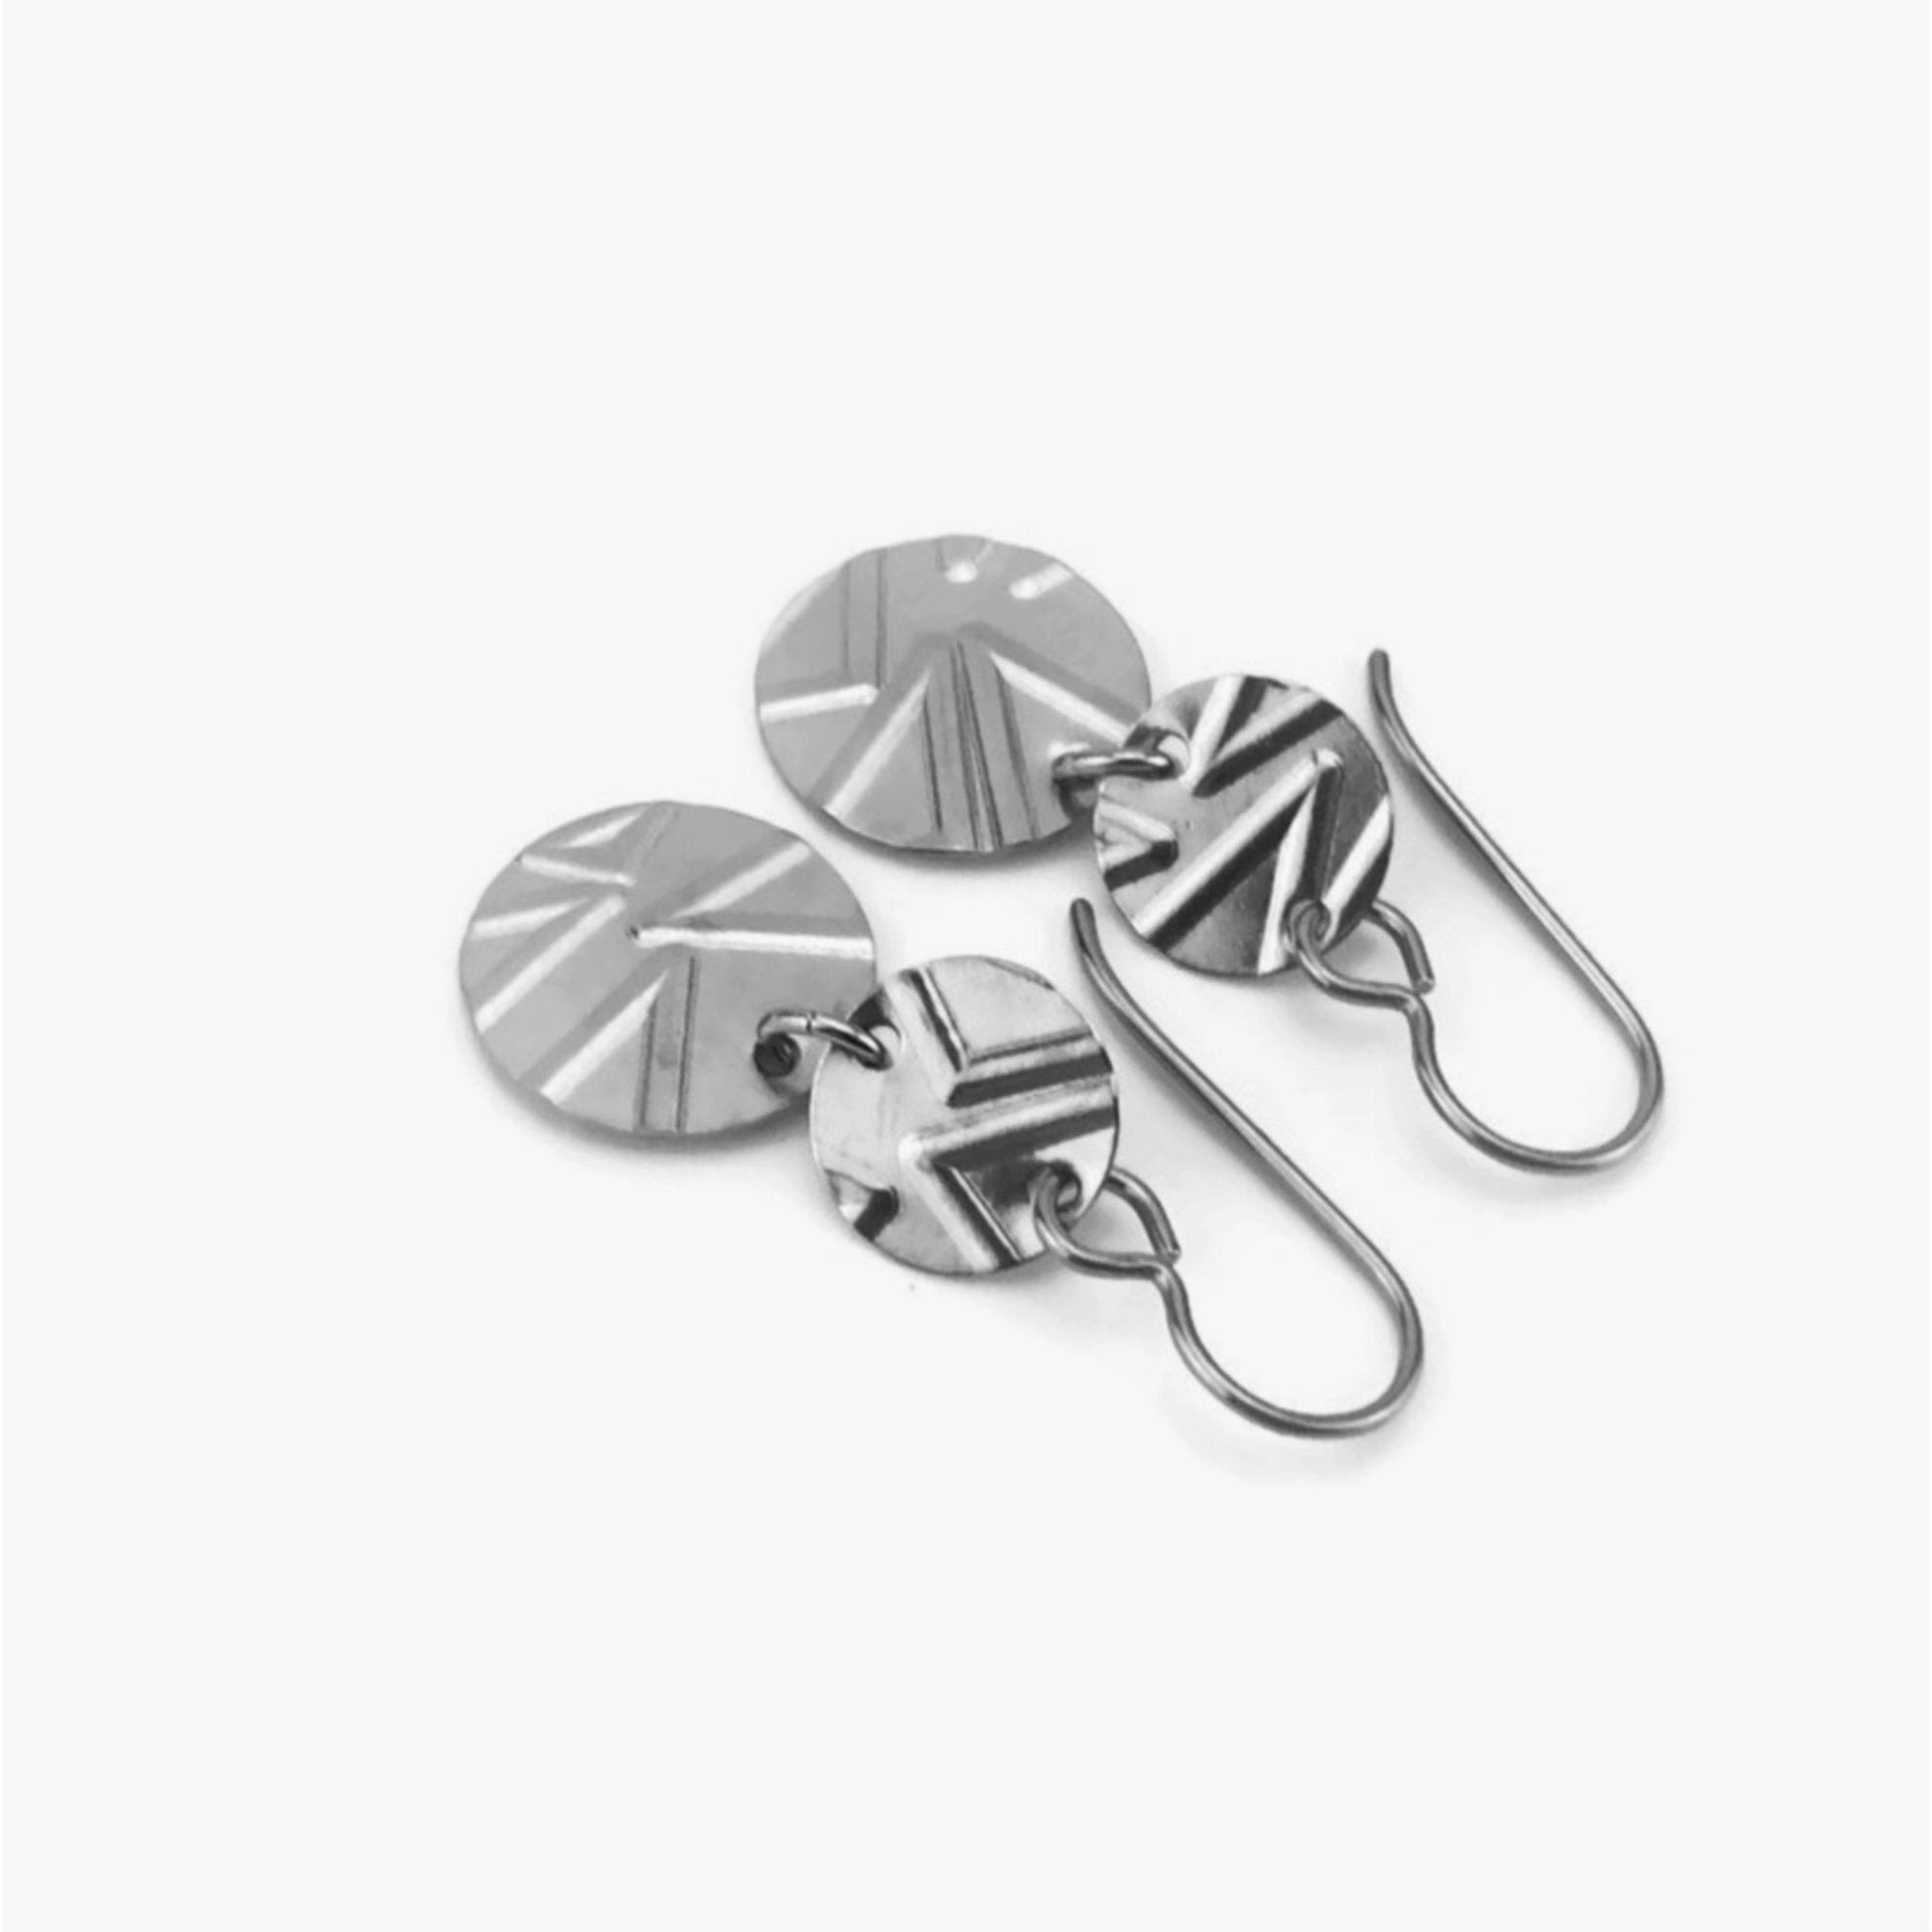 Niobium Earrings Double Disc Geo Patterned Nickel Free Discs Titanium Earrings, Geometric Triangles Embossed Disk Sensitive Ears Earrings